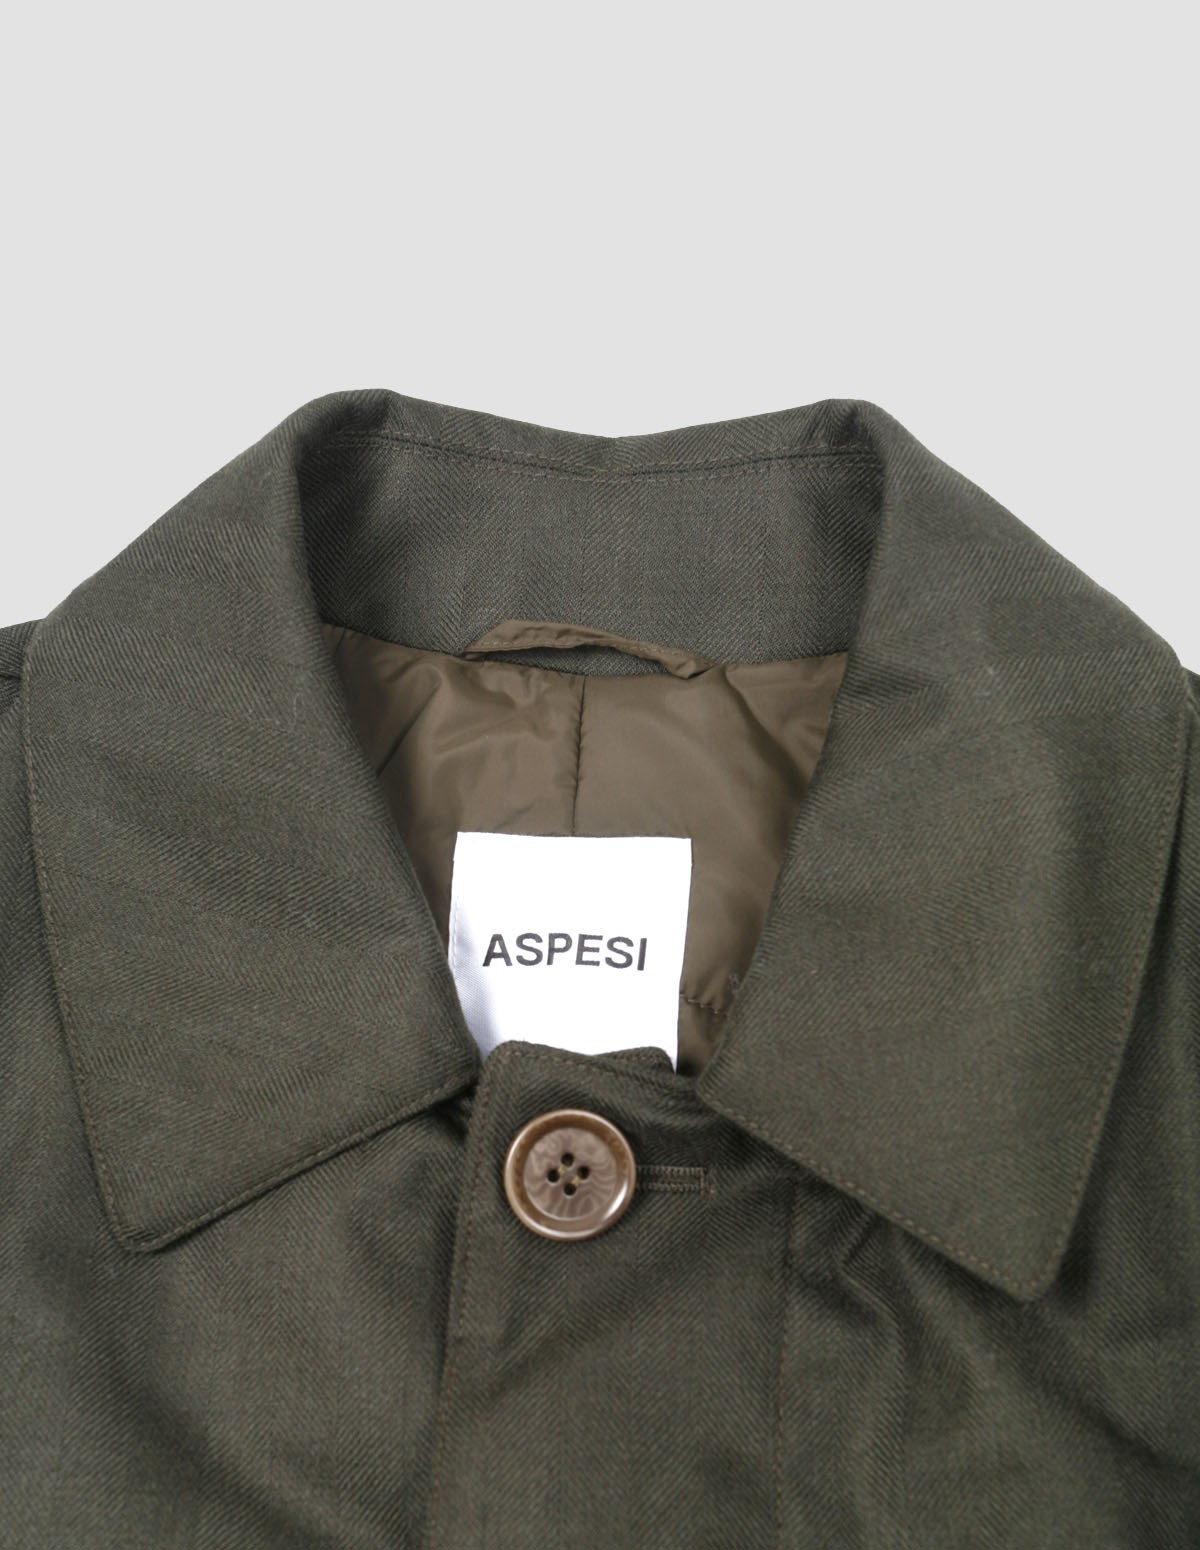 Aspesi Men's Coat